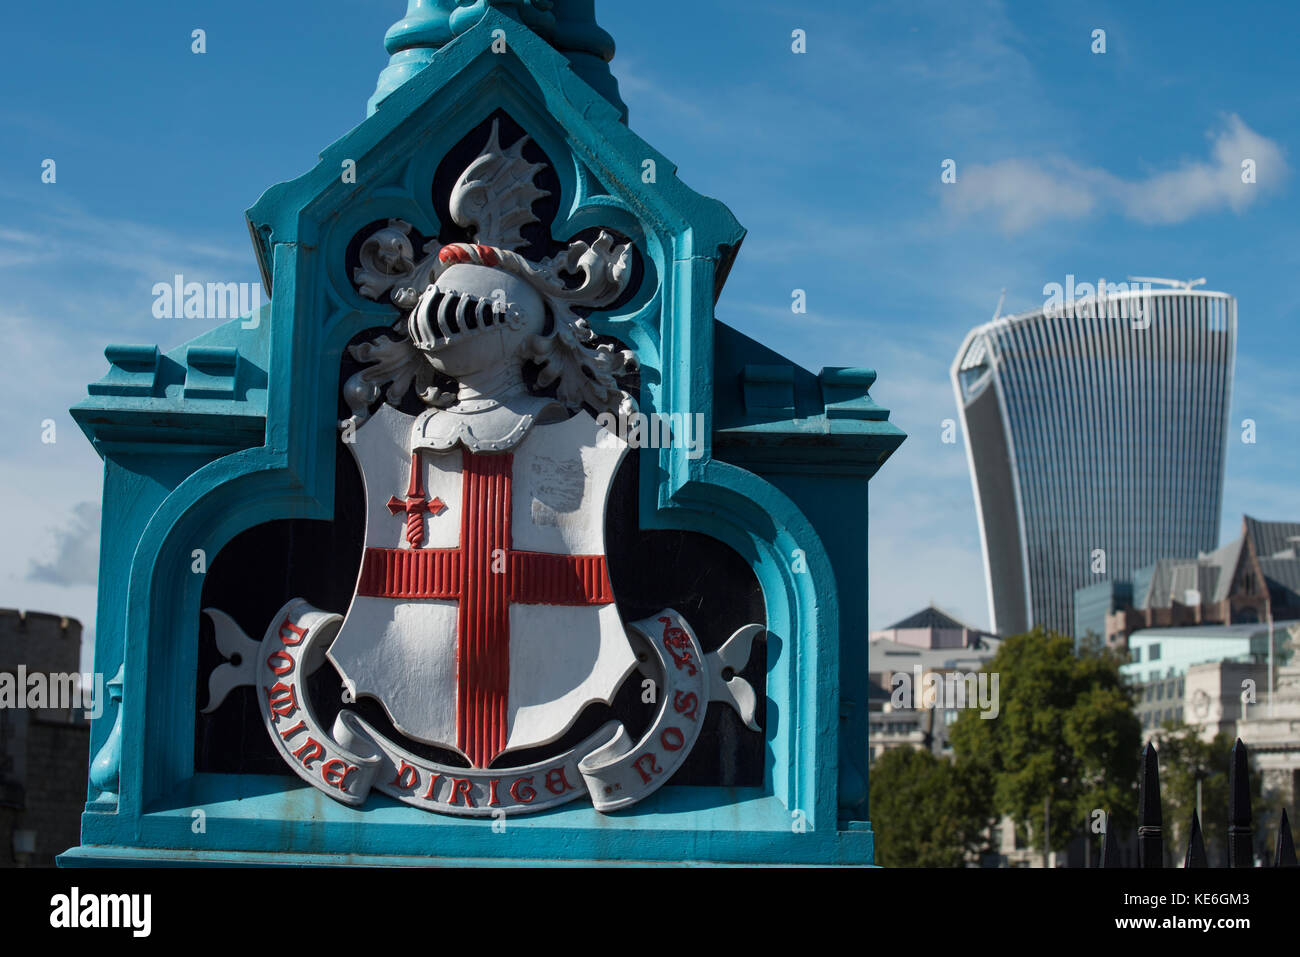 Città di Londra edifici moderni a contrasto con i vecchi edifici fotografati da Tower Bridge, Londra Inghilterra. Ott 2017 visto qui 20 Fenchurch Street Foto Stock